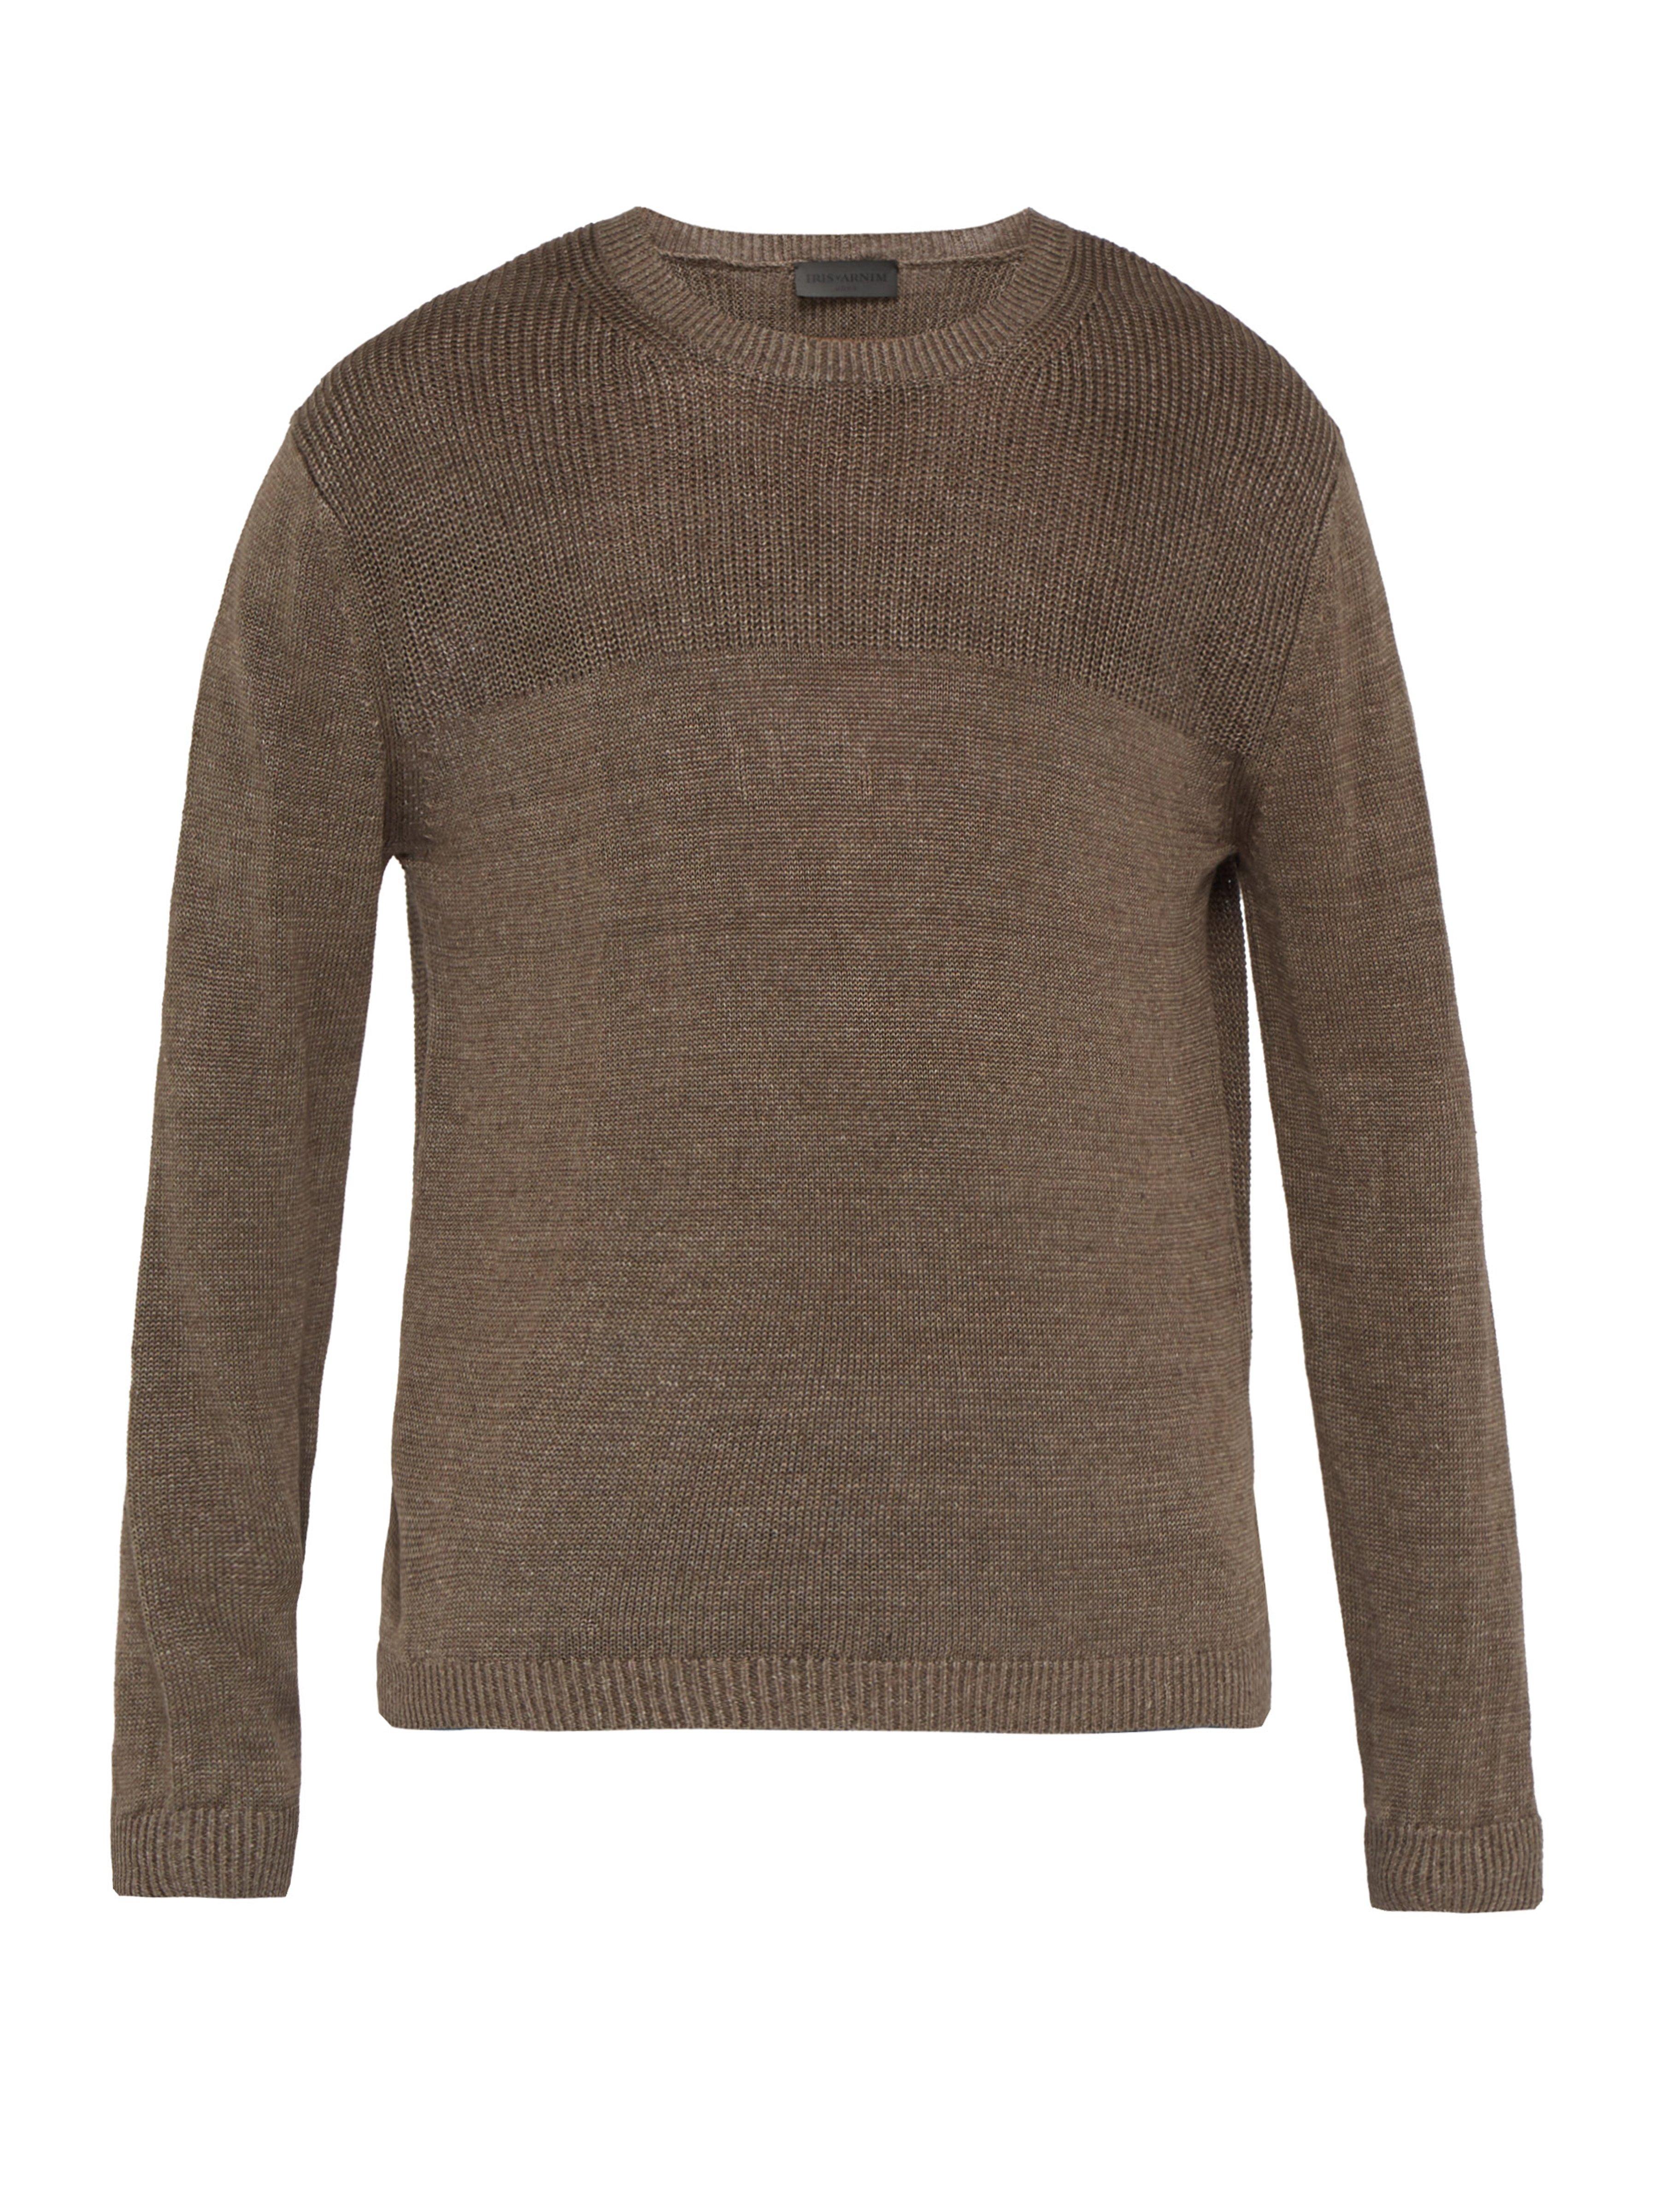 Iris Von Arnim Felix Contrast Stitch Linen Sweater in Brown for Men - Lyst